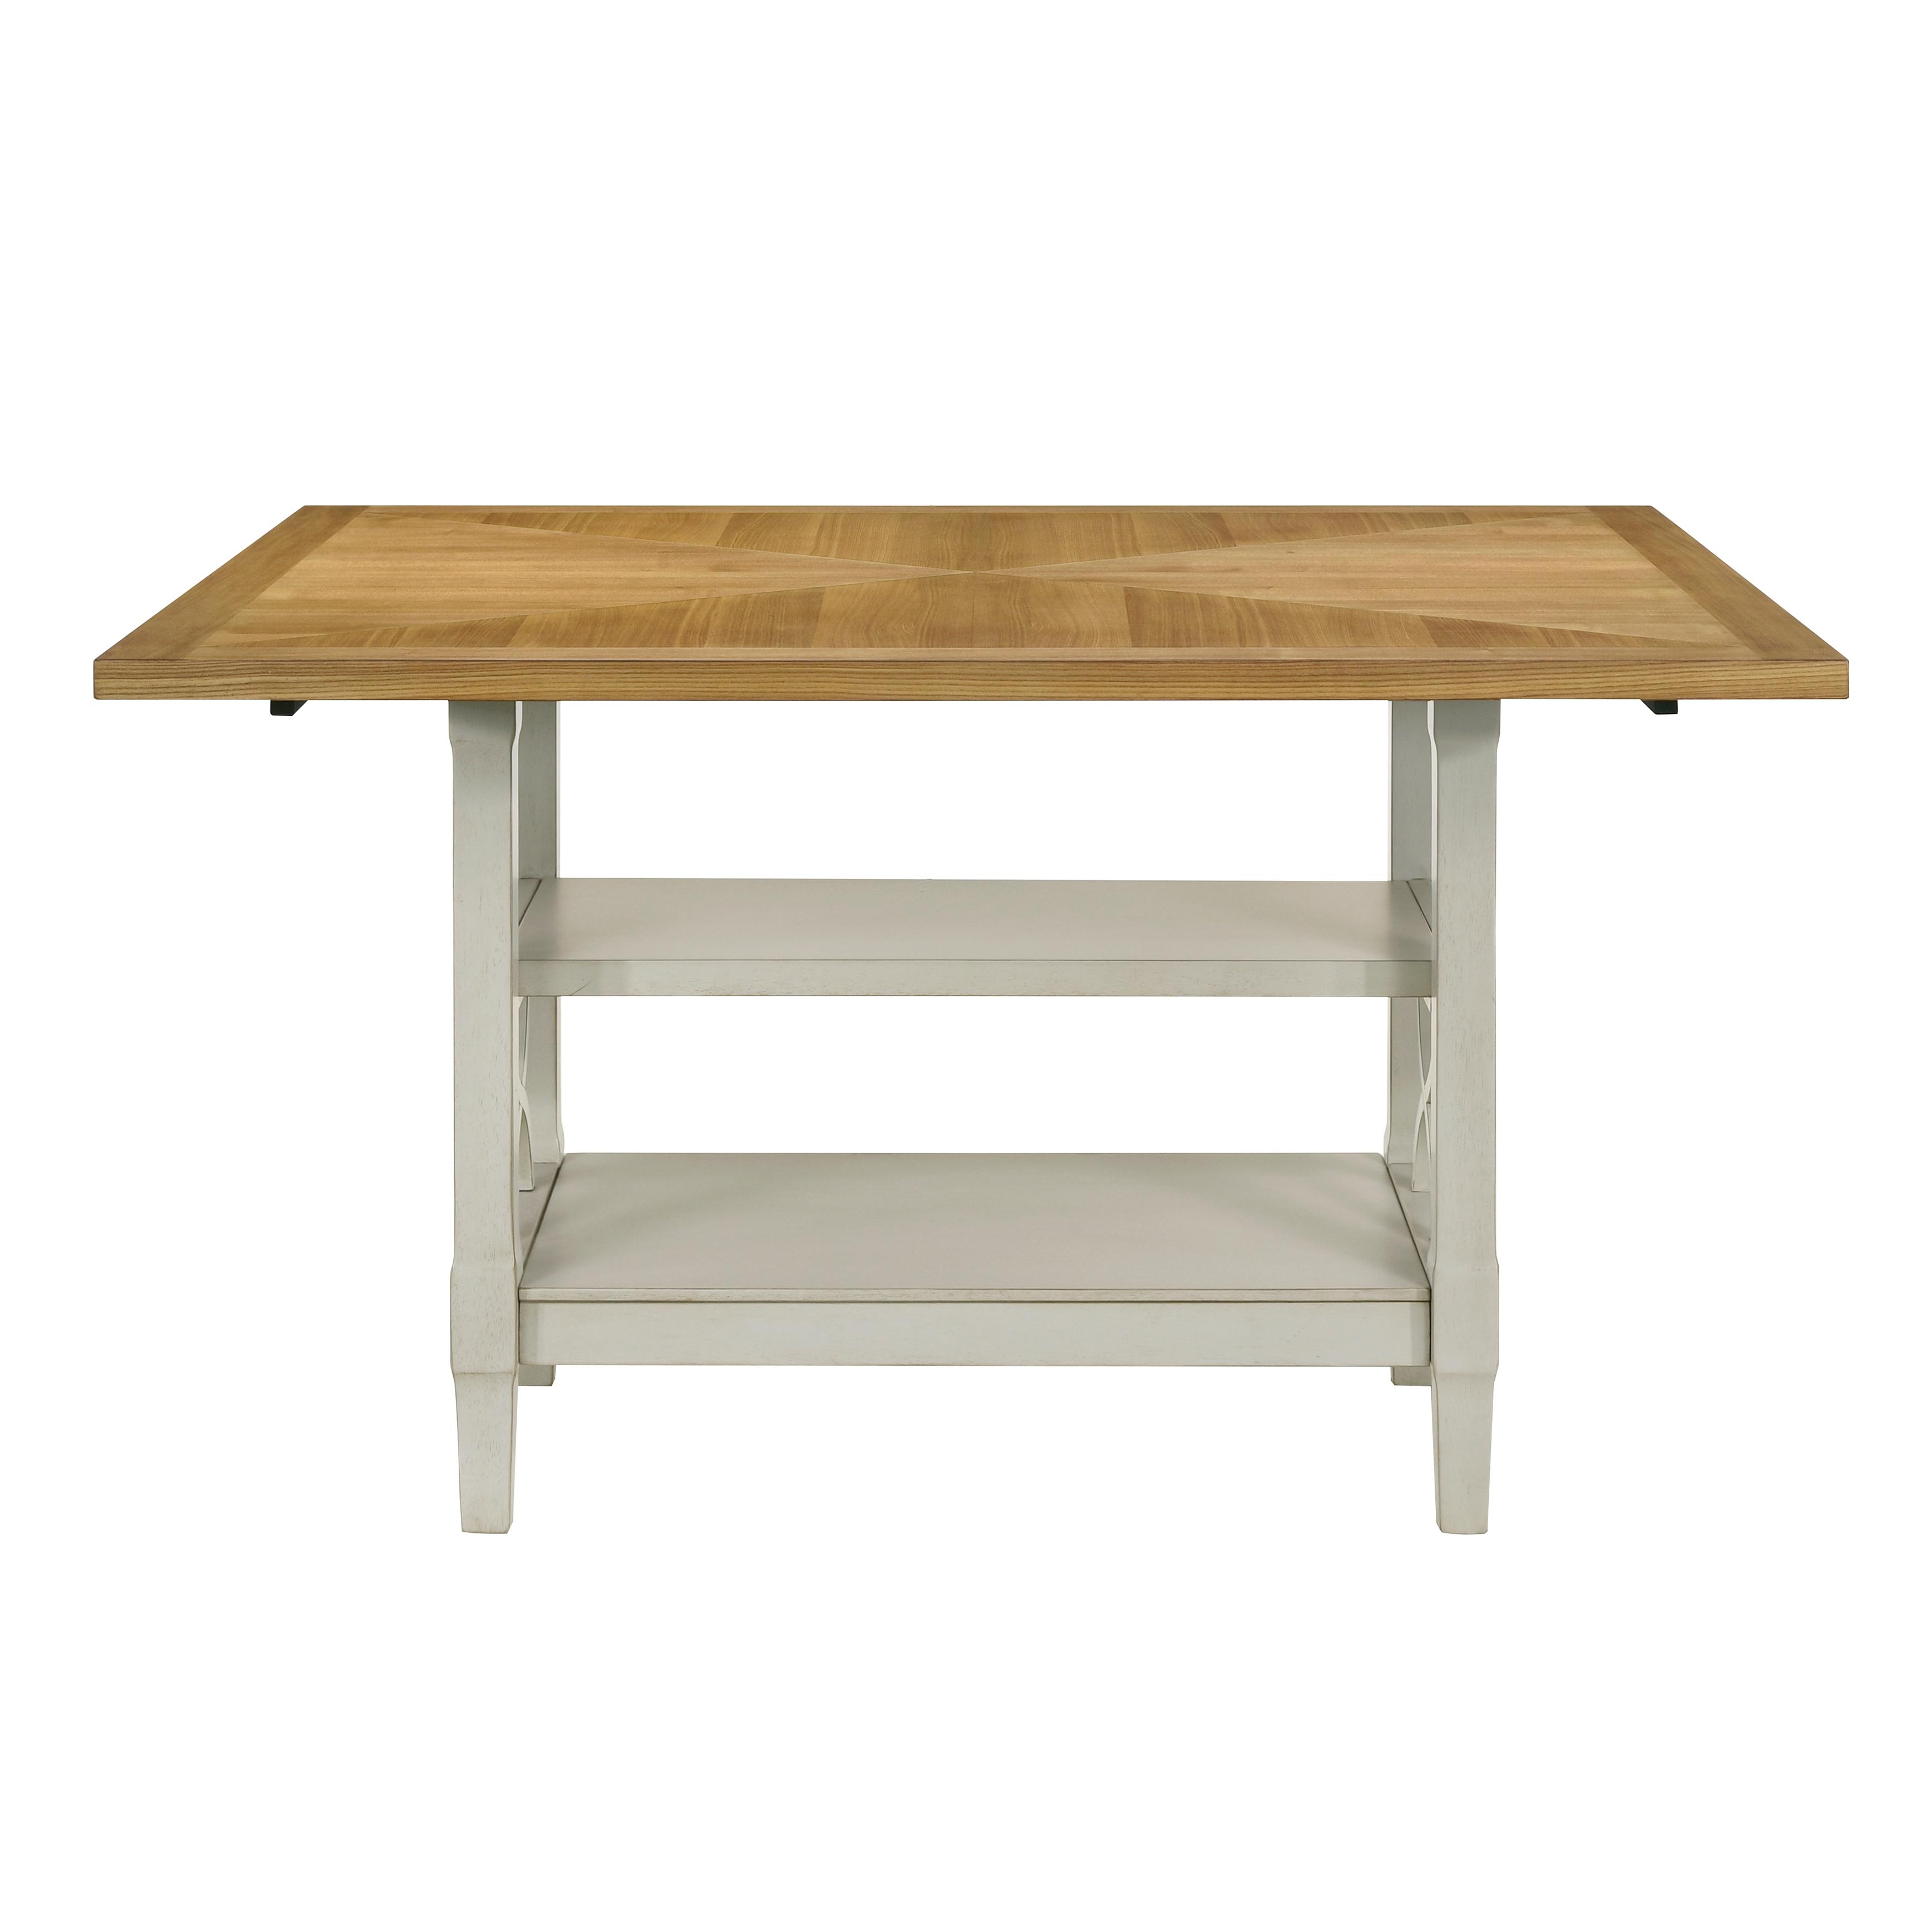 

    
Homelegance Maribelle Counter Height Table Set 7PCS 5910-36*-7PCS Counter Height Table Set Oak/Khaki/Gray 5910-36*-7PCS
